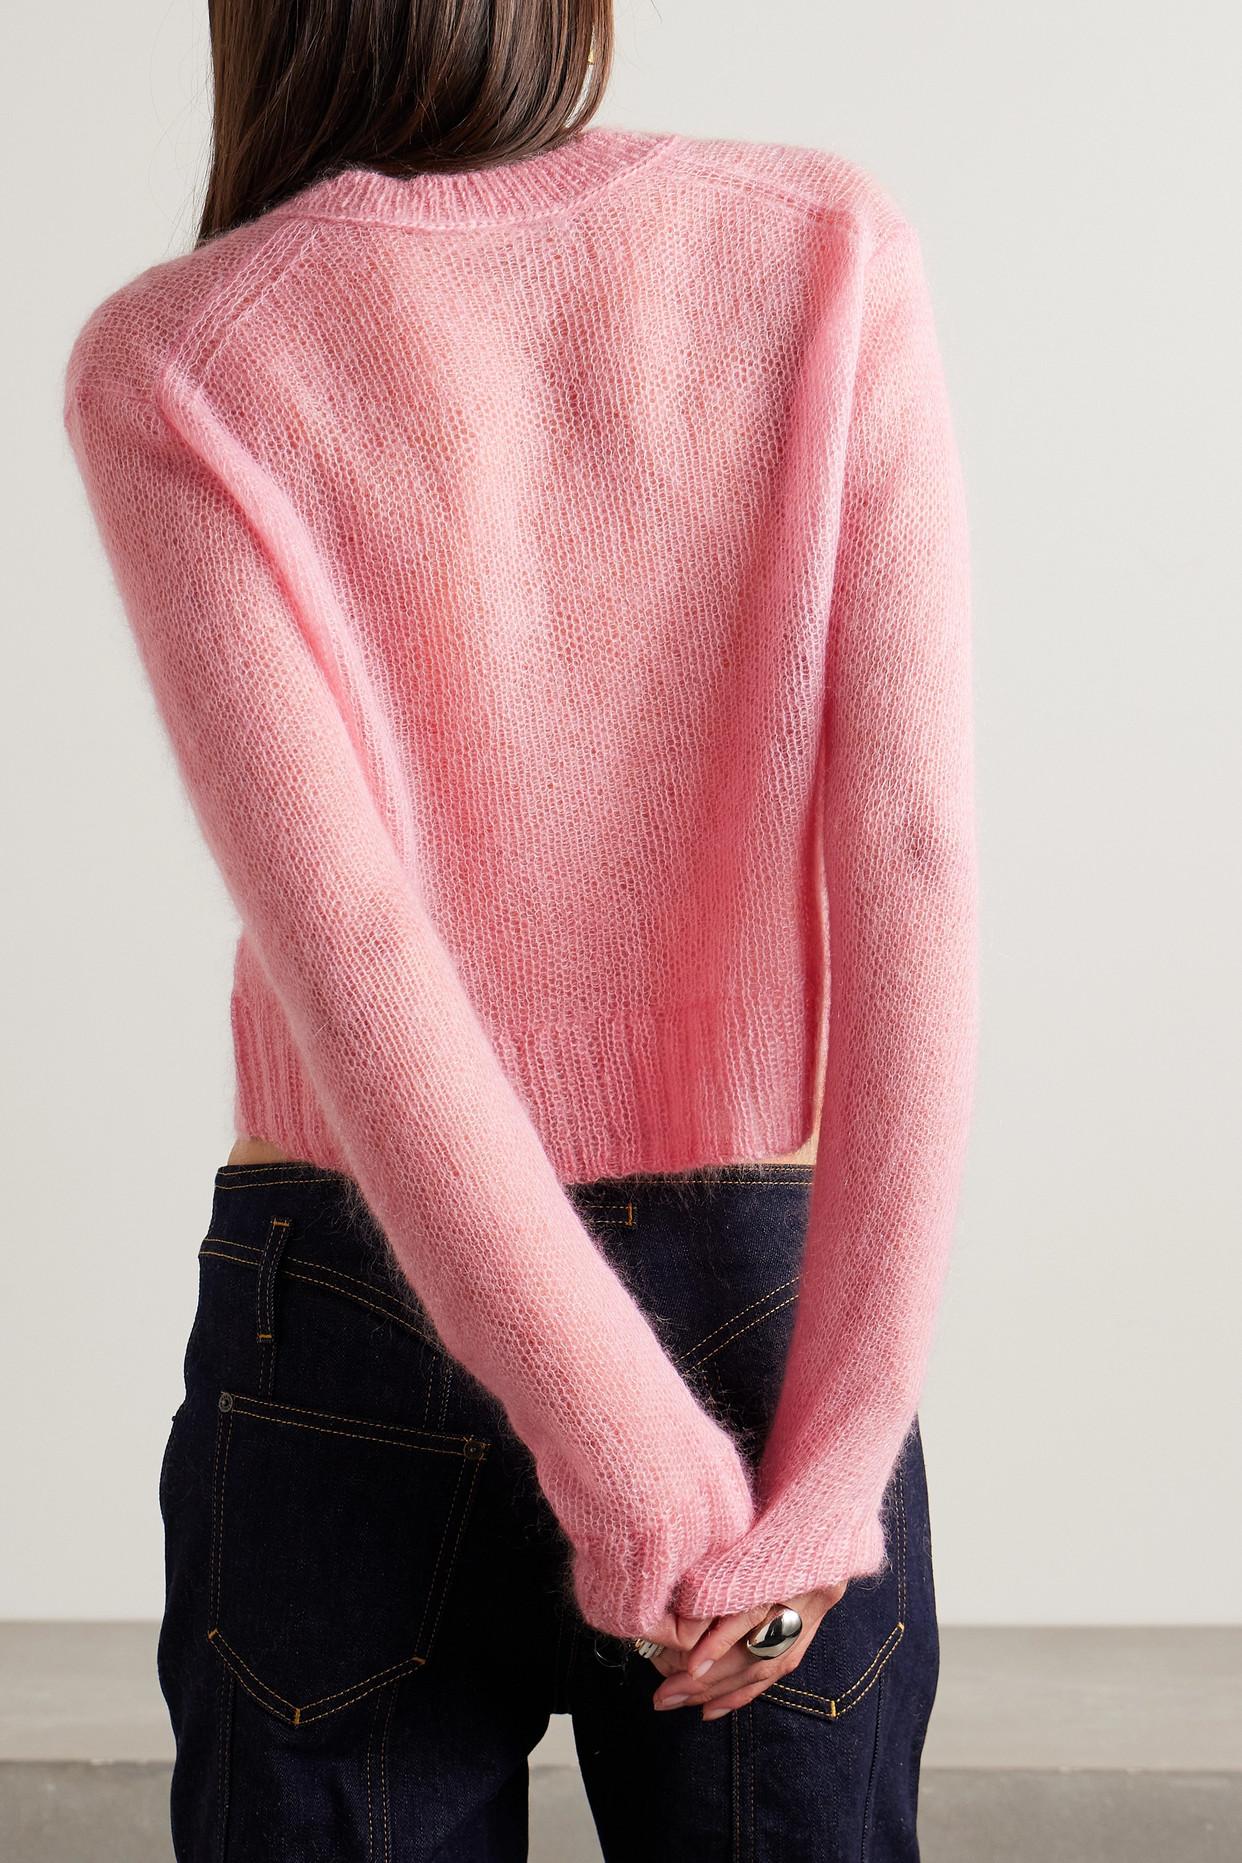 https://cdna.lystit.com/photos/net-a-porter/cff97062/acne-Pink-Cropped-Open-knit-Mohair-blend-Sweater.jpeg